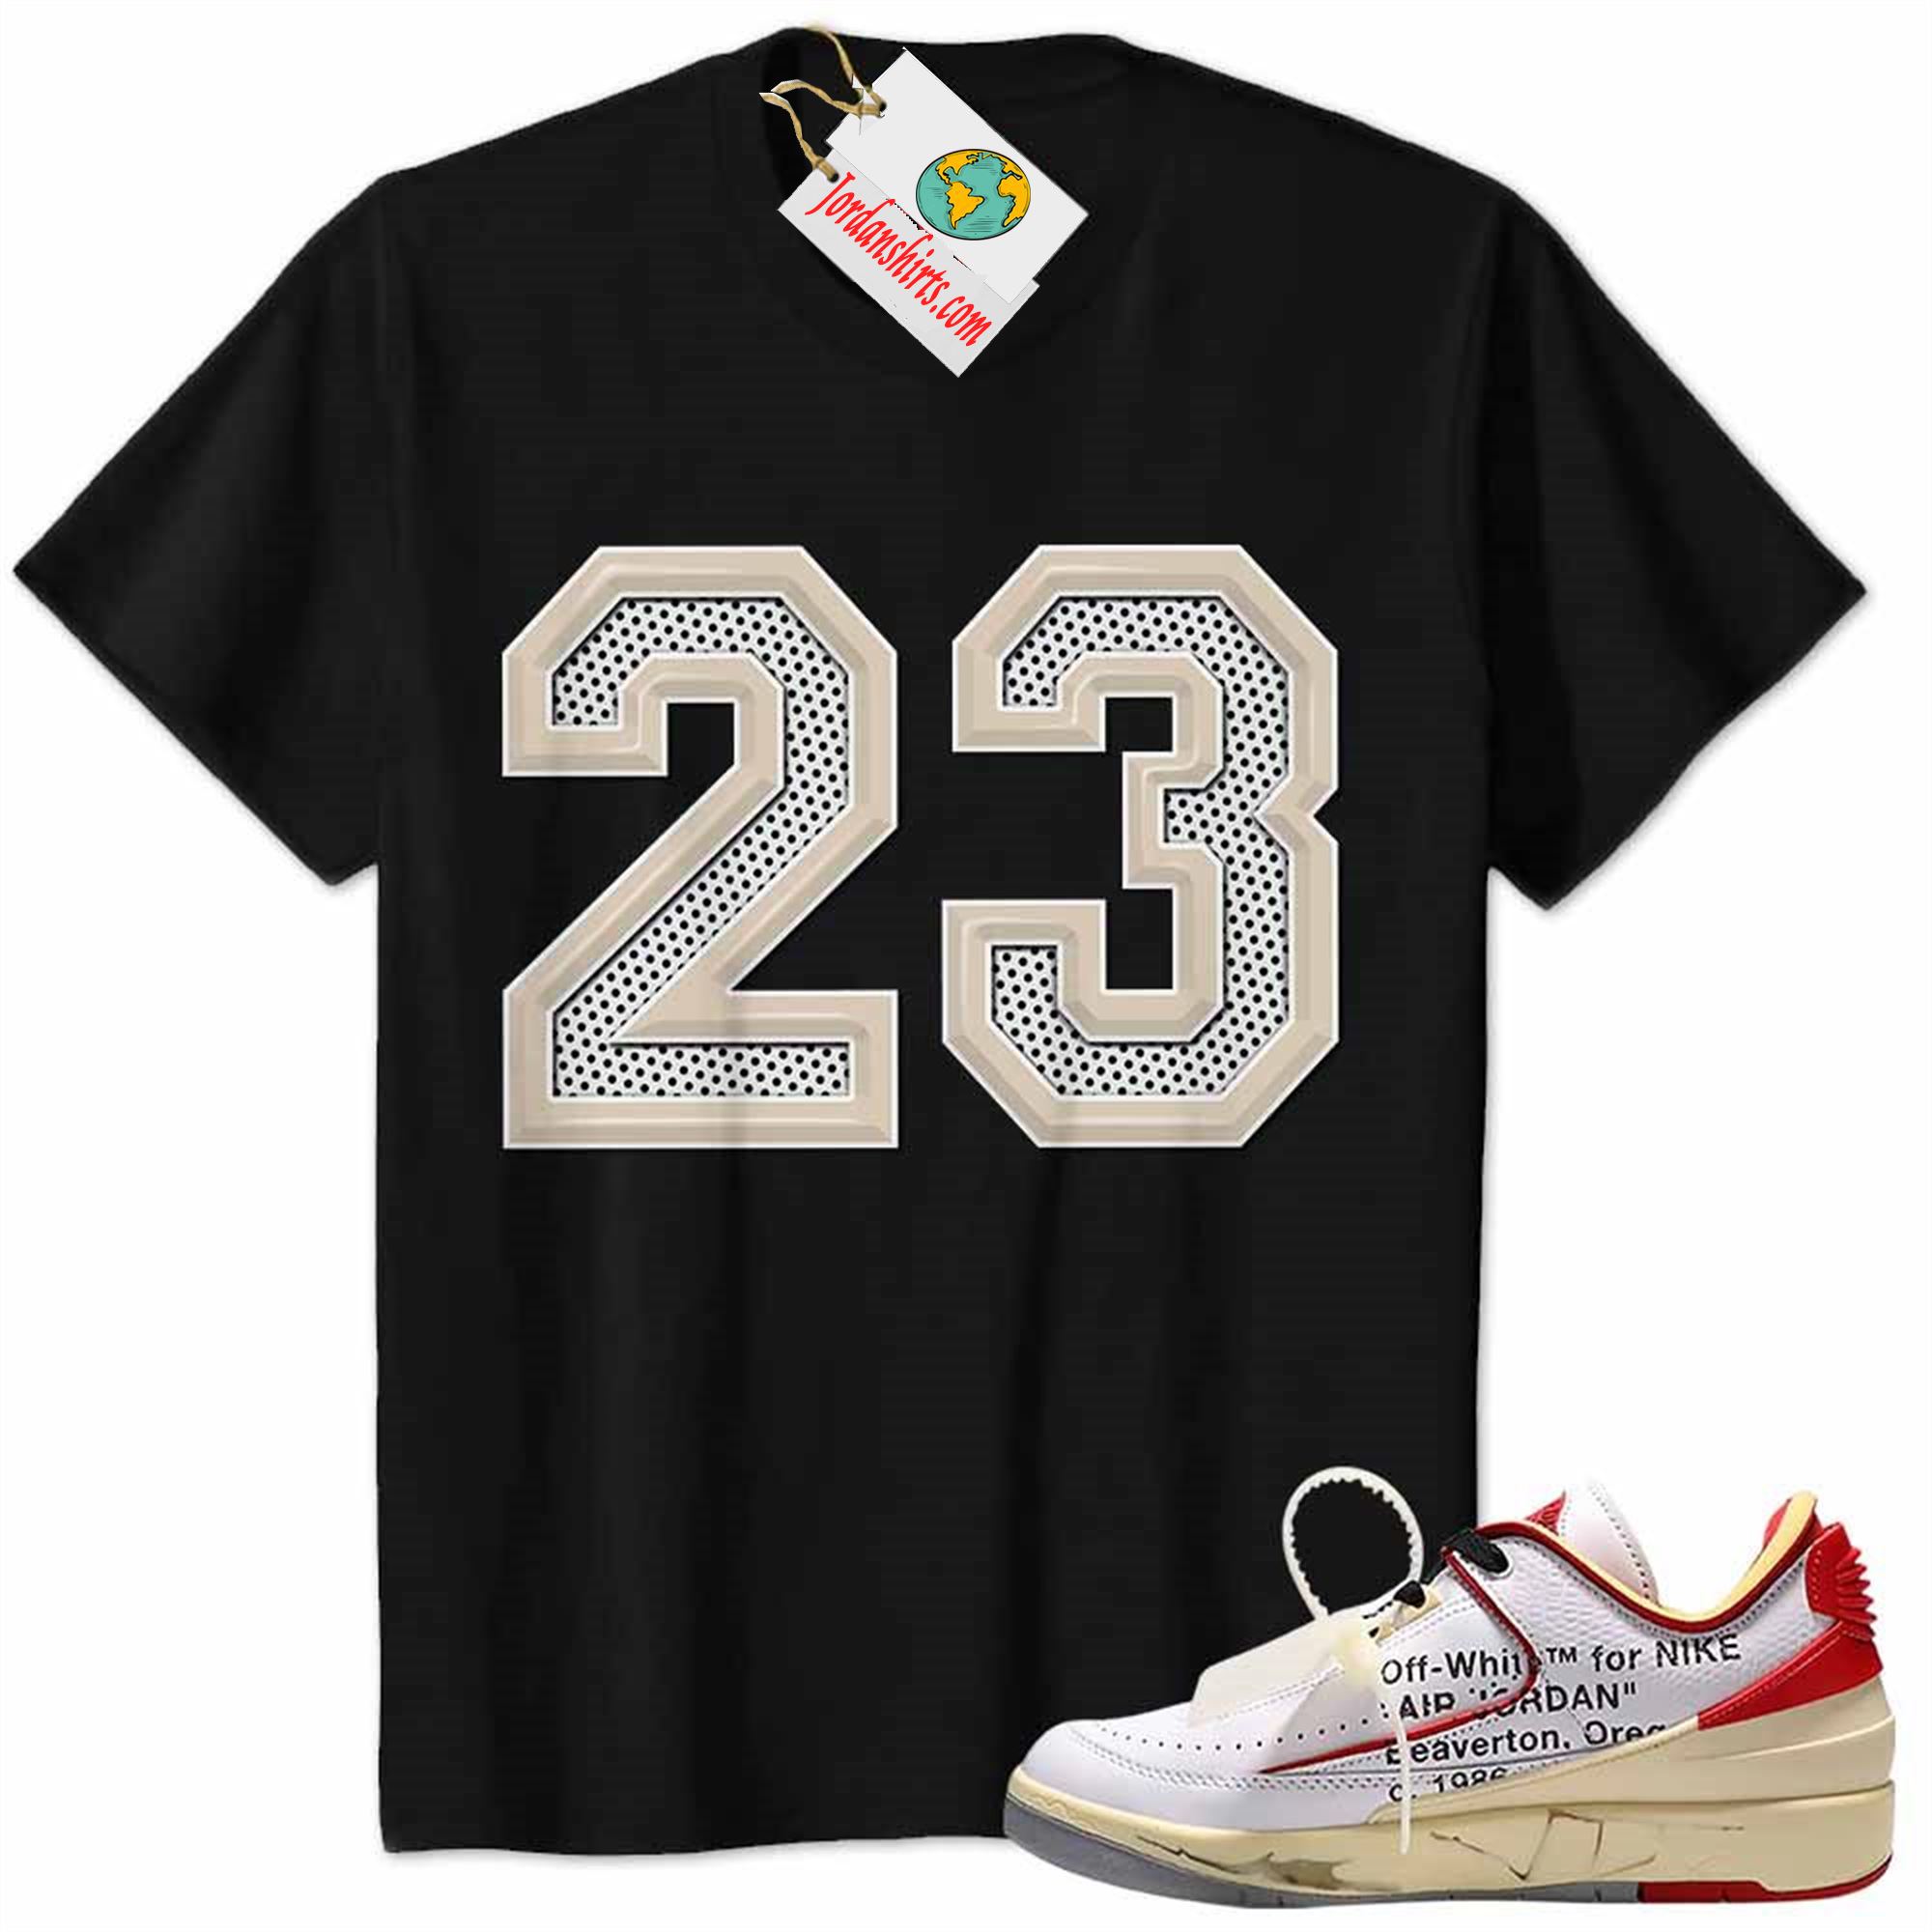 Jordan 2 Shirt, Jordan 2 Low White Red Off-white Shirt Michael Jordan Number 23 Black Plus Size Up To 5xl